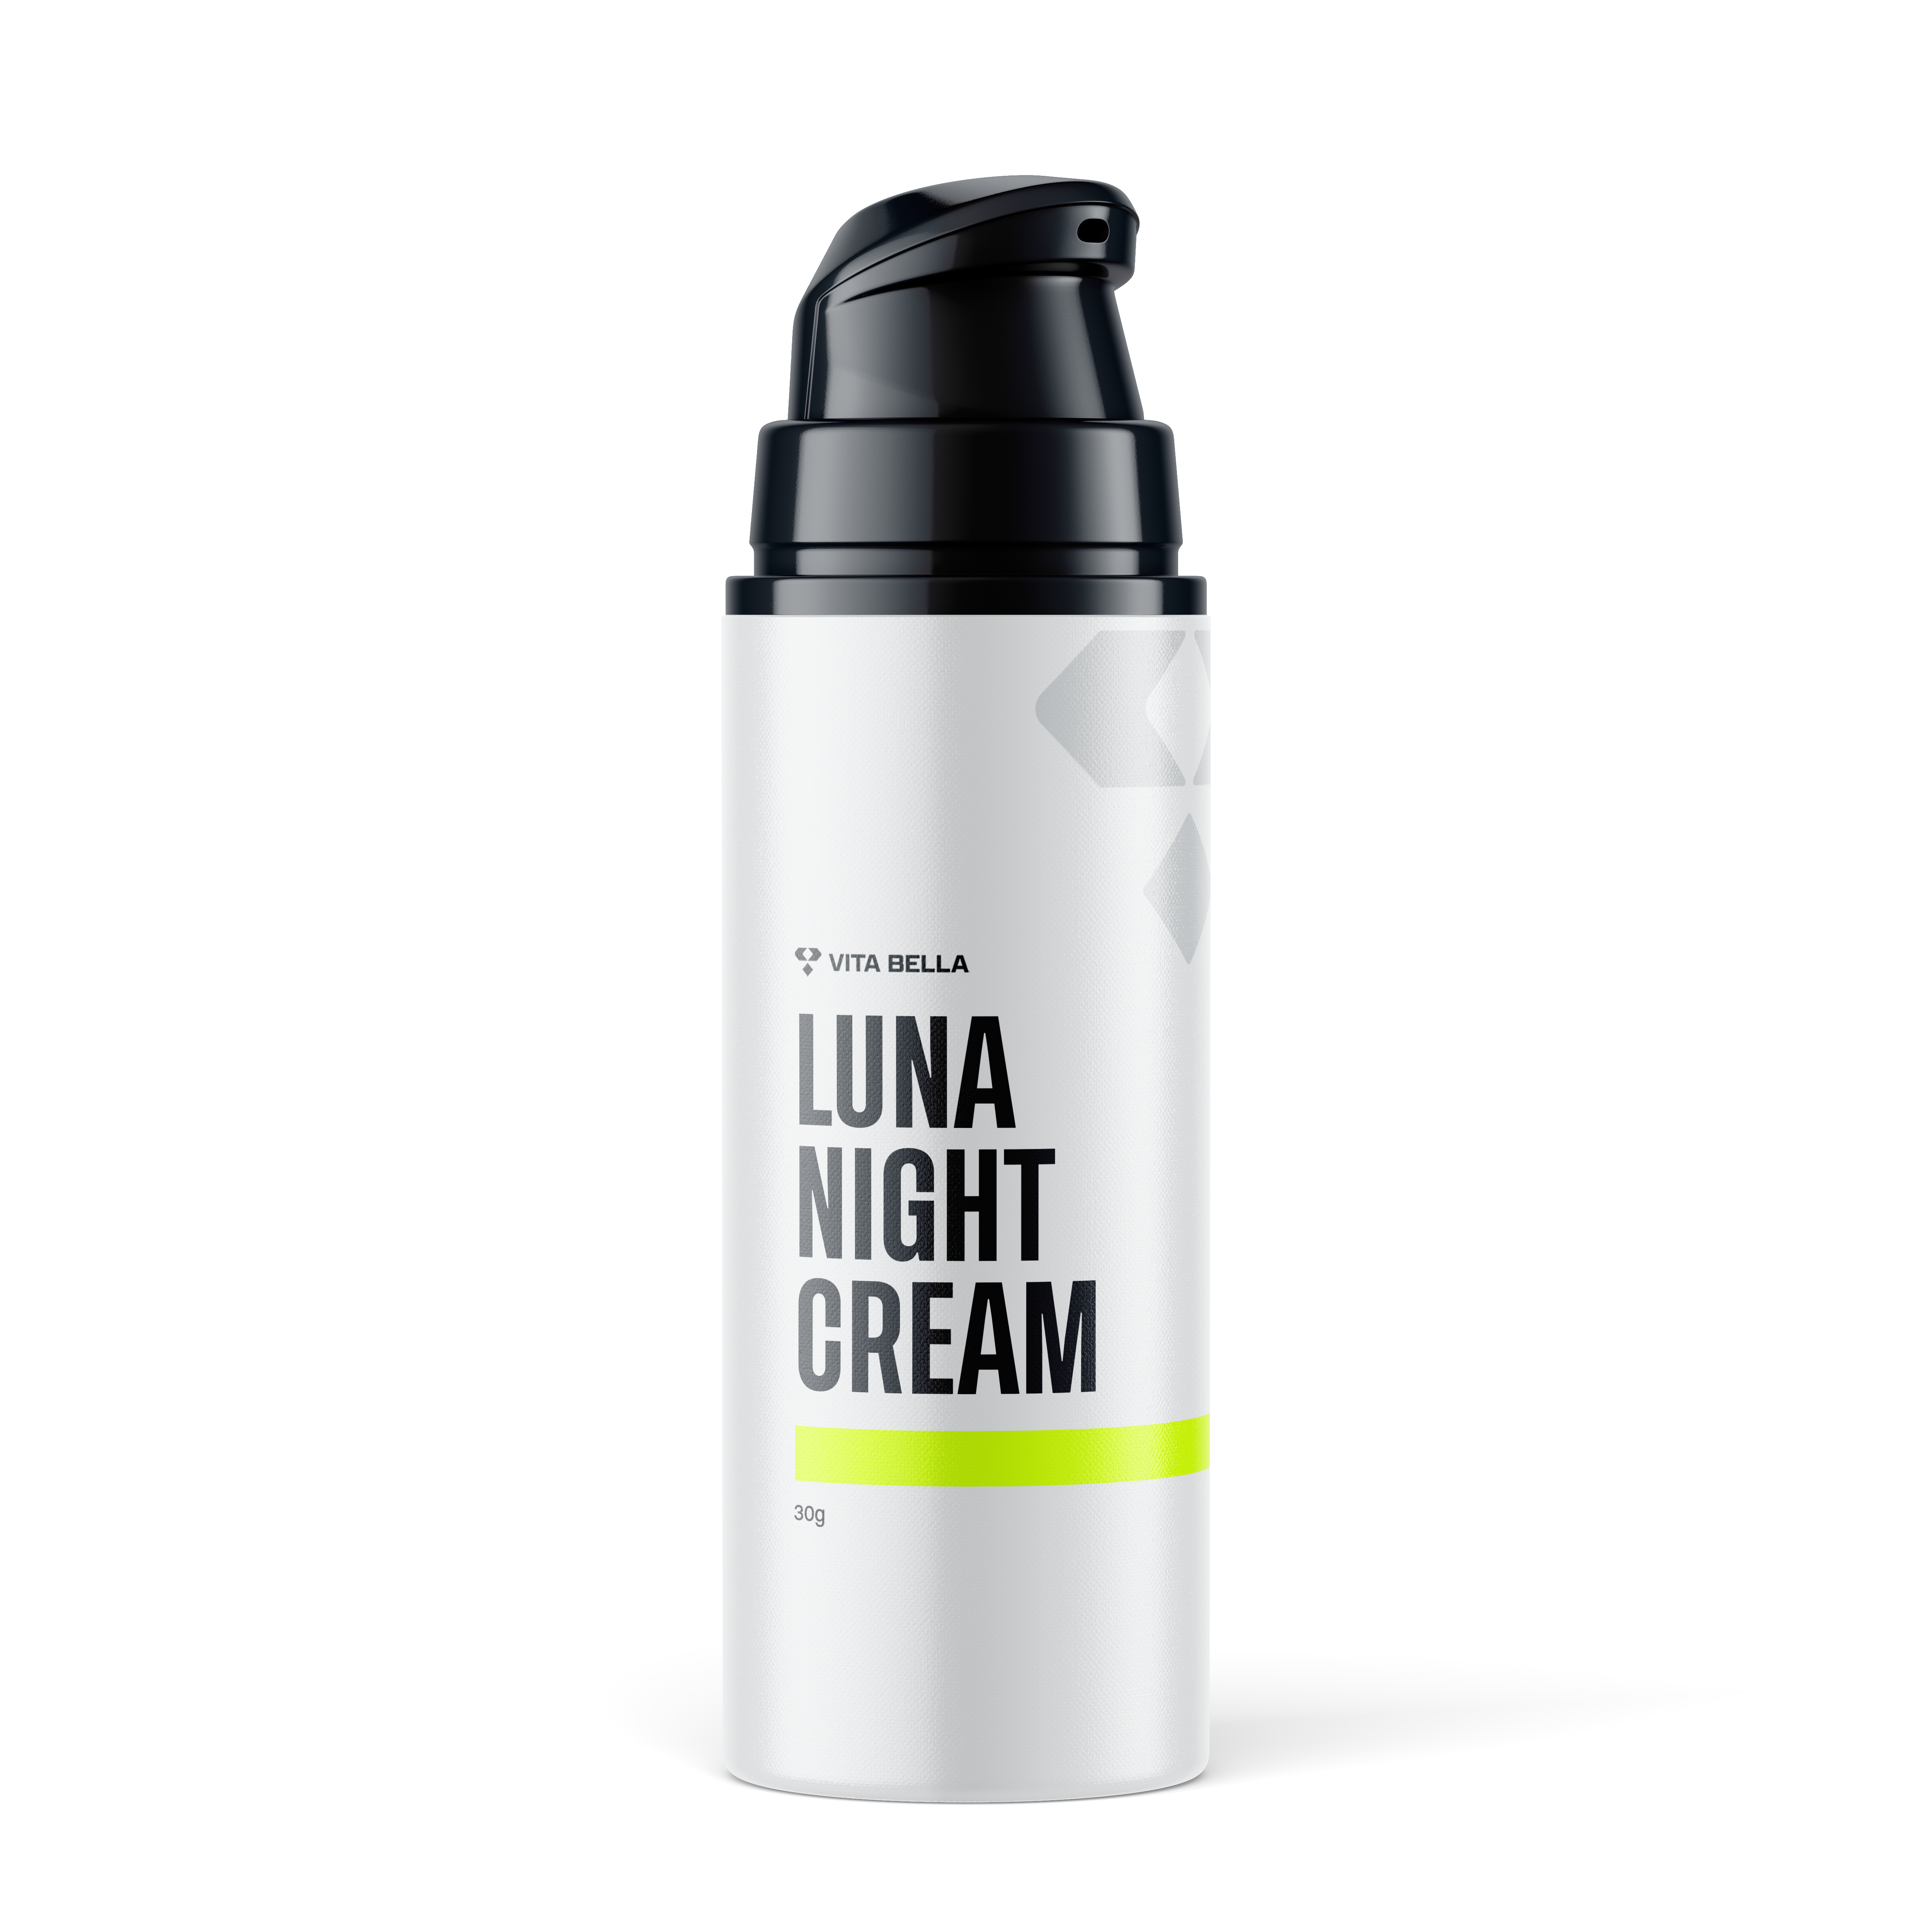 Luna night cream